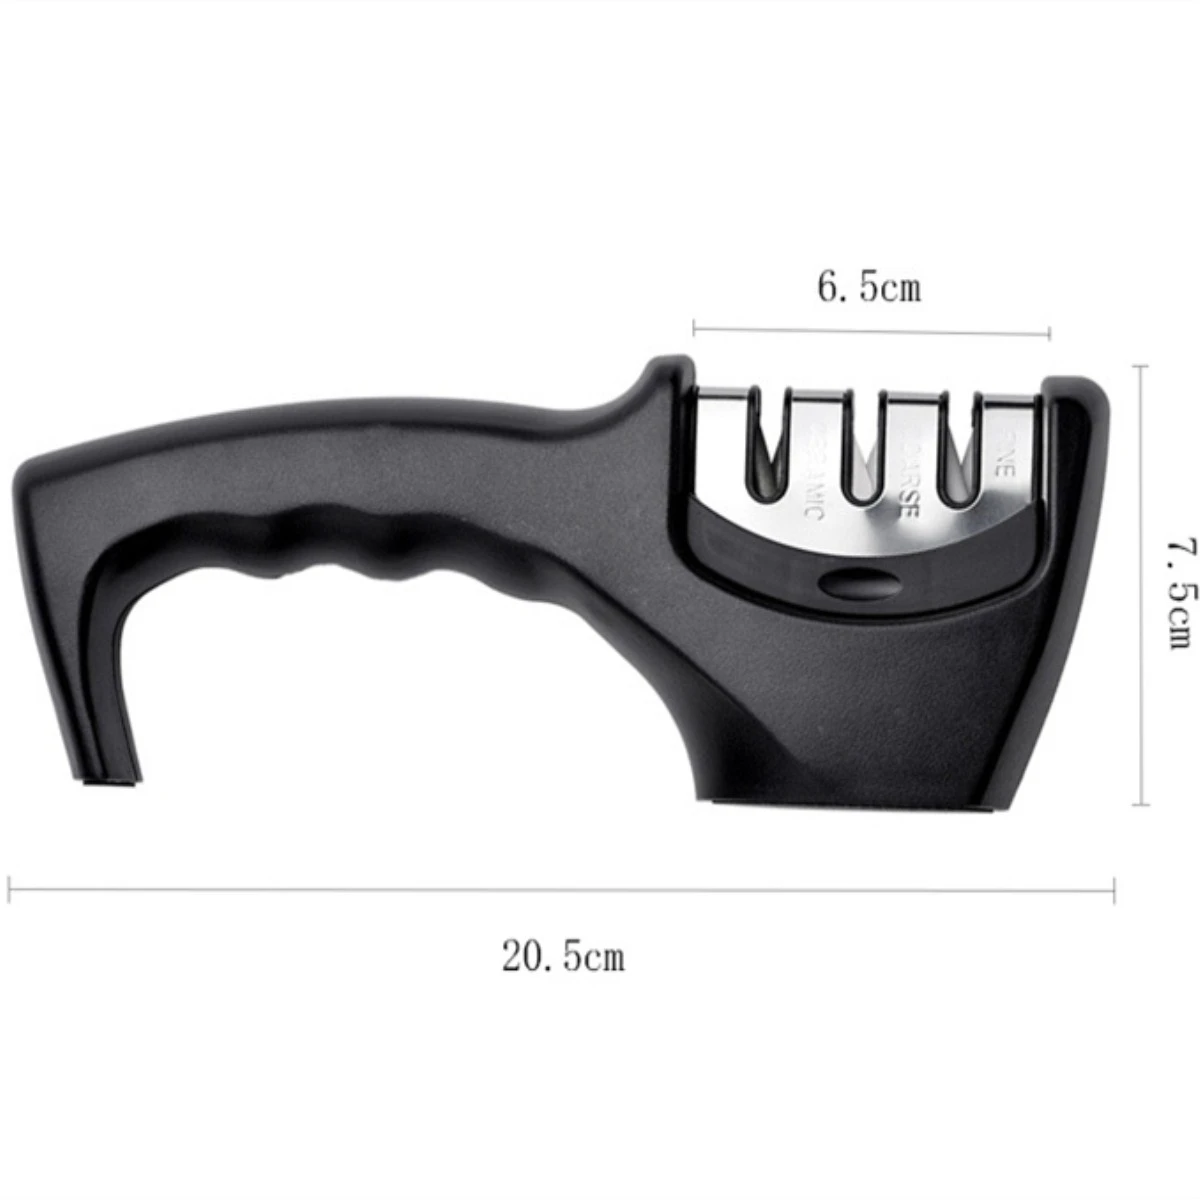 3 ступени нож шлифовальный Быстрый Профессиональный нескользящий Силиконовый Резиновый бытовой кухонный инструмент Прямая поставка - Цвет: B